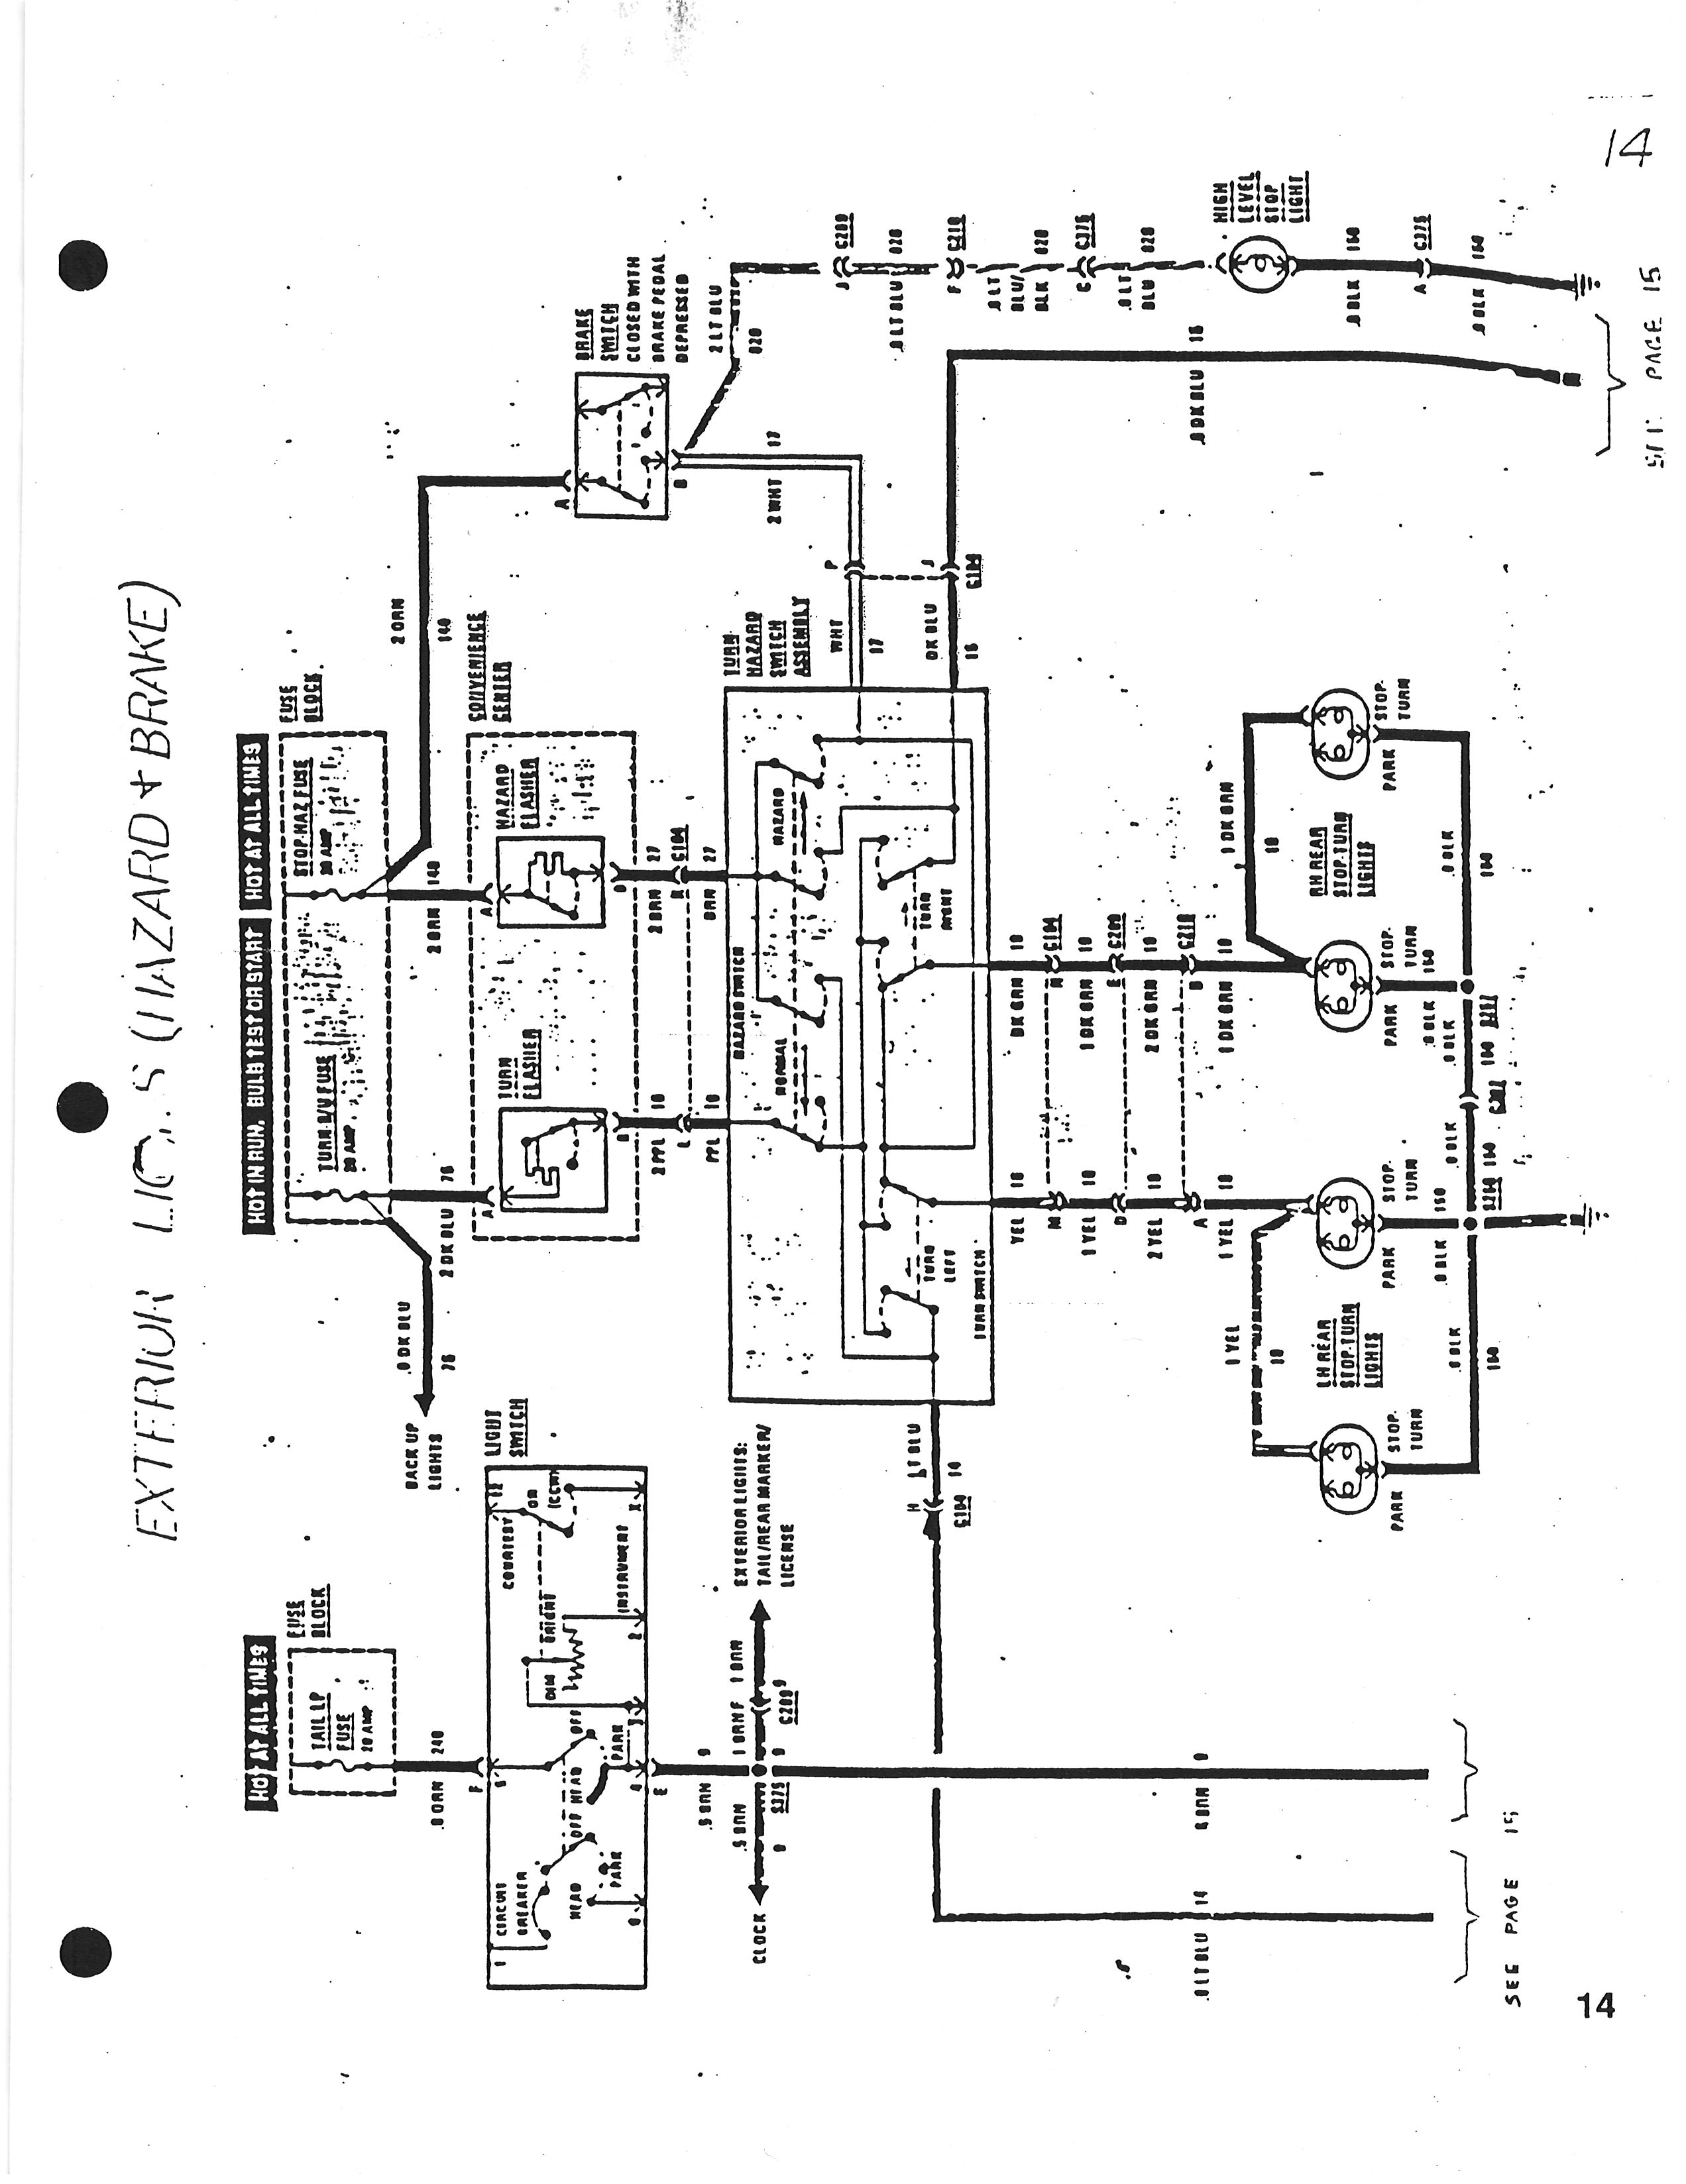 1987 Avanti Wiring Diagrams - 1984-91 Avanti